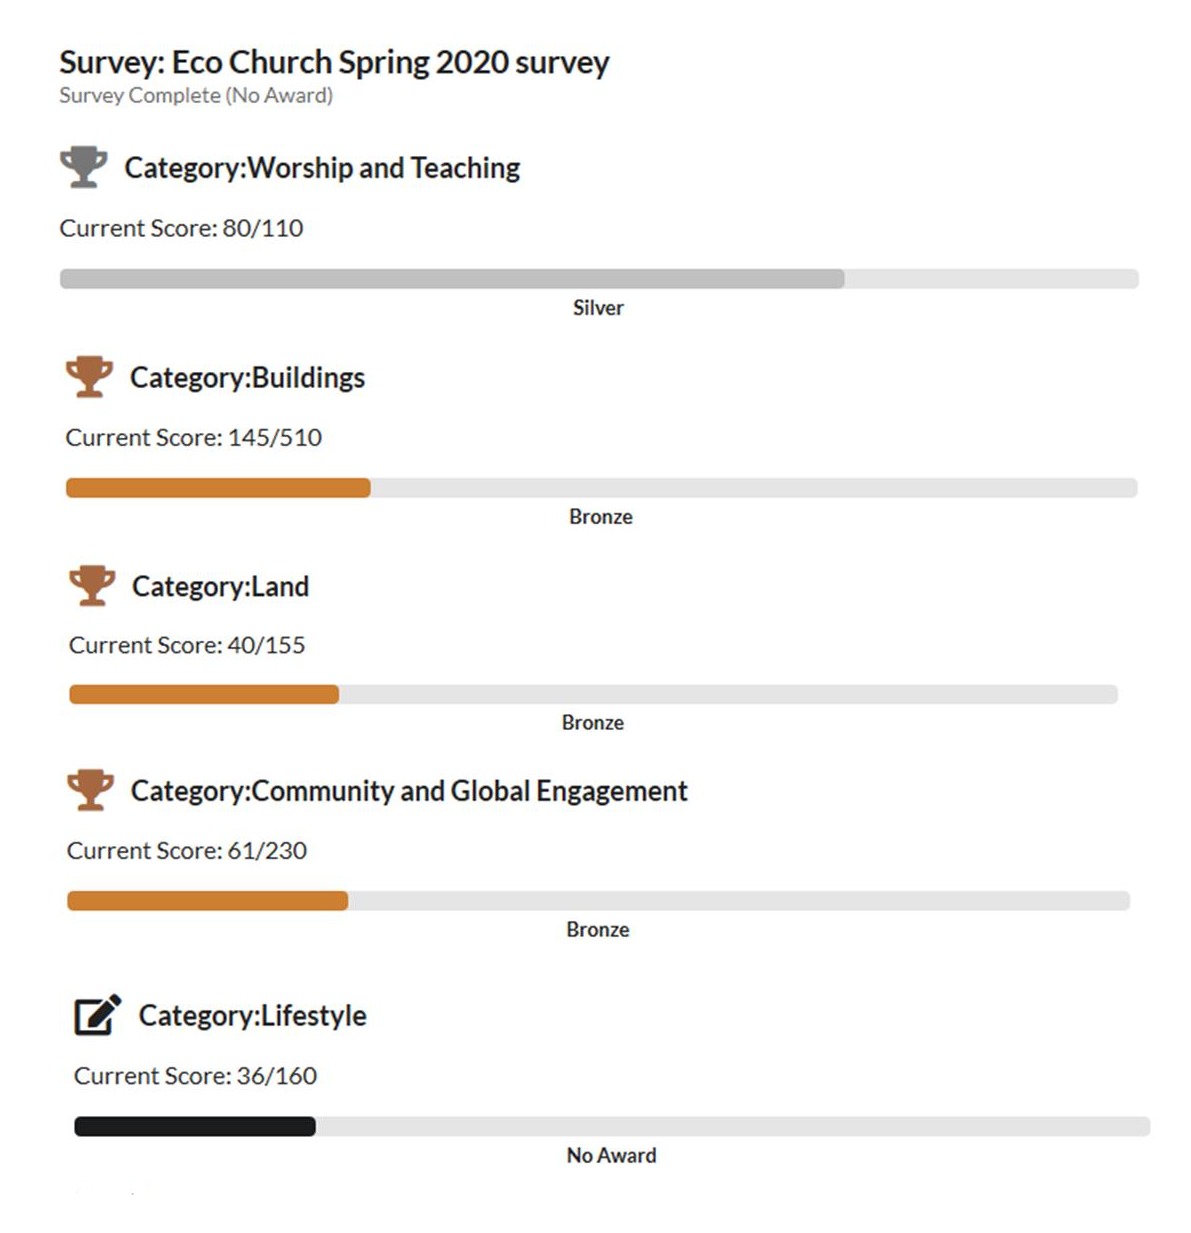 Eco Church Spring 2020 survey